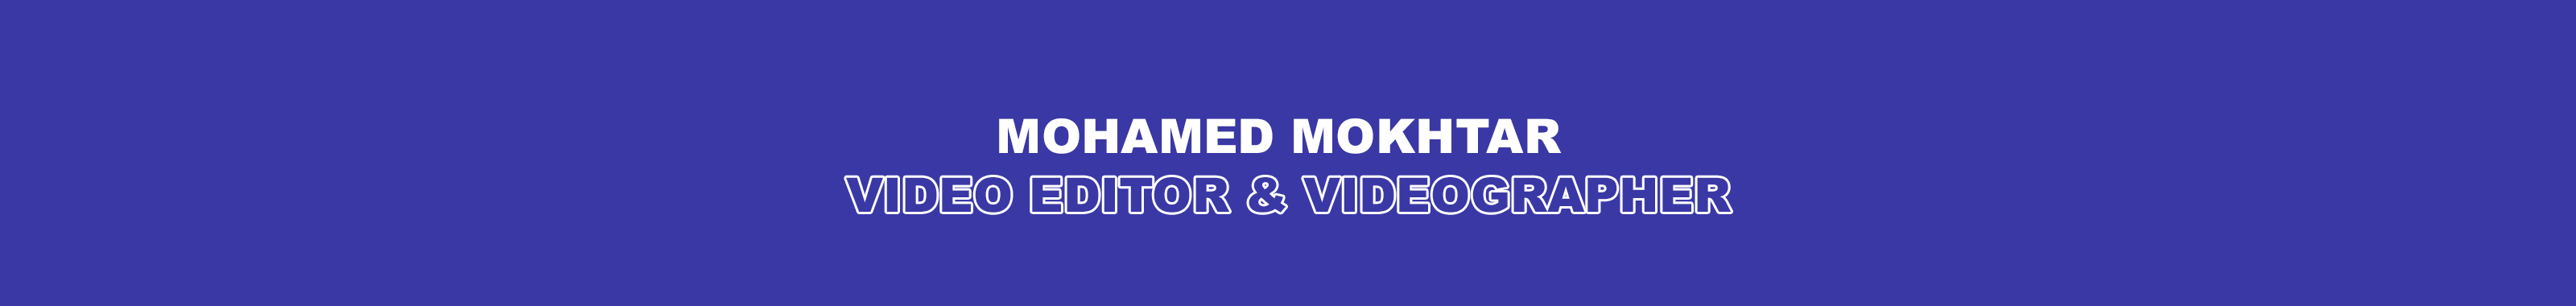 Mohamed Mokhtar's profile banner